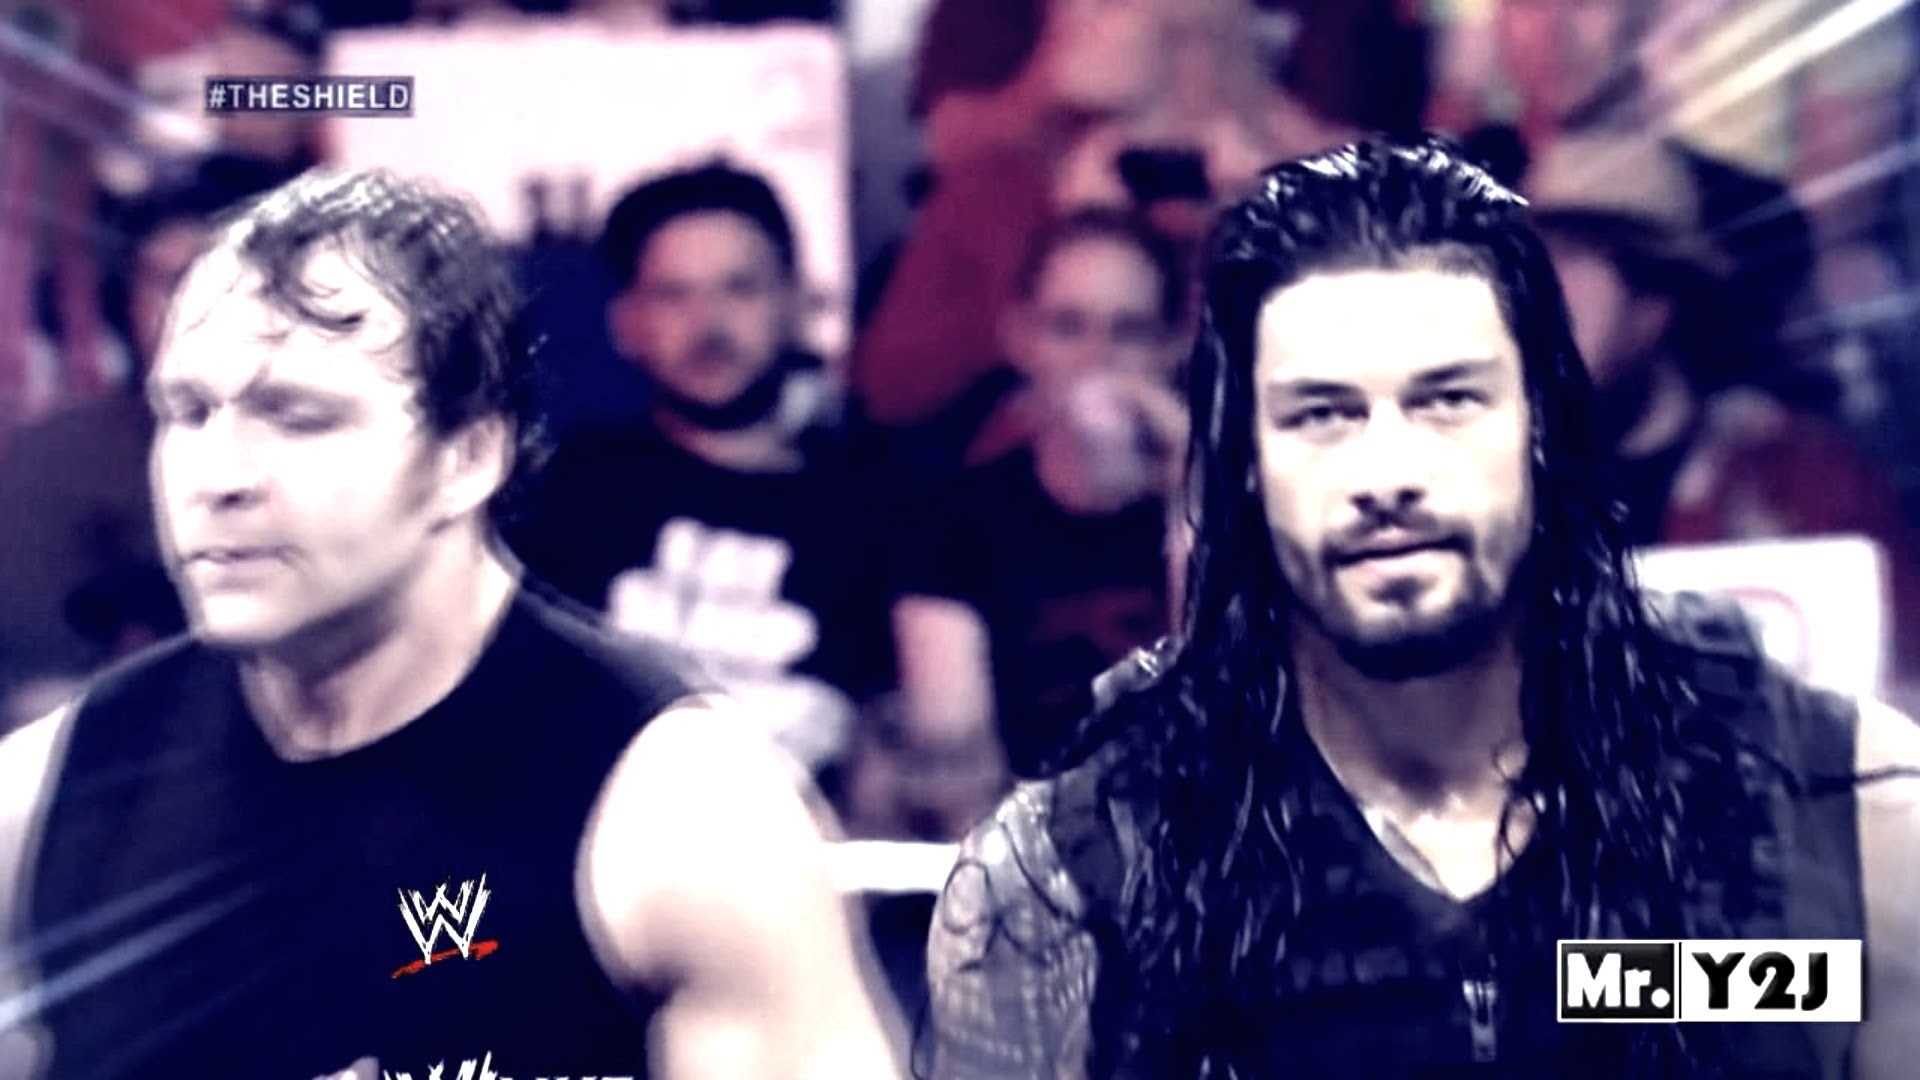 1920x1080 WWE Roman Reigns & Dean Ambrose "The Shield" Titantron Entrance Video 2014  HD - YouTube